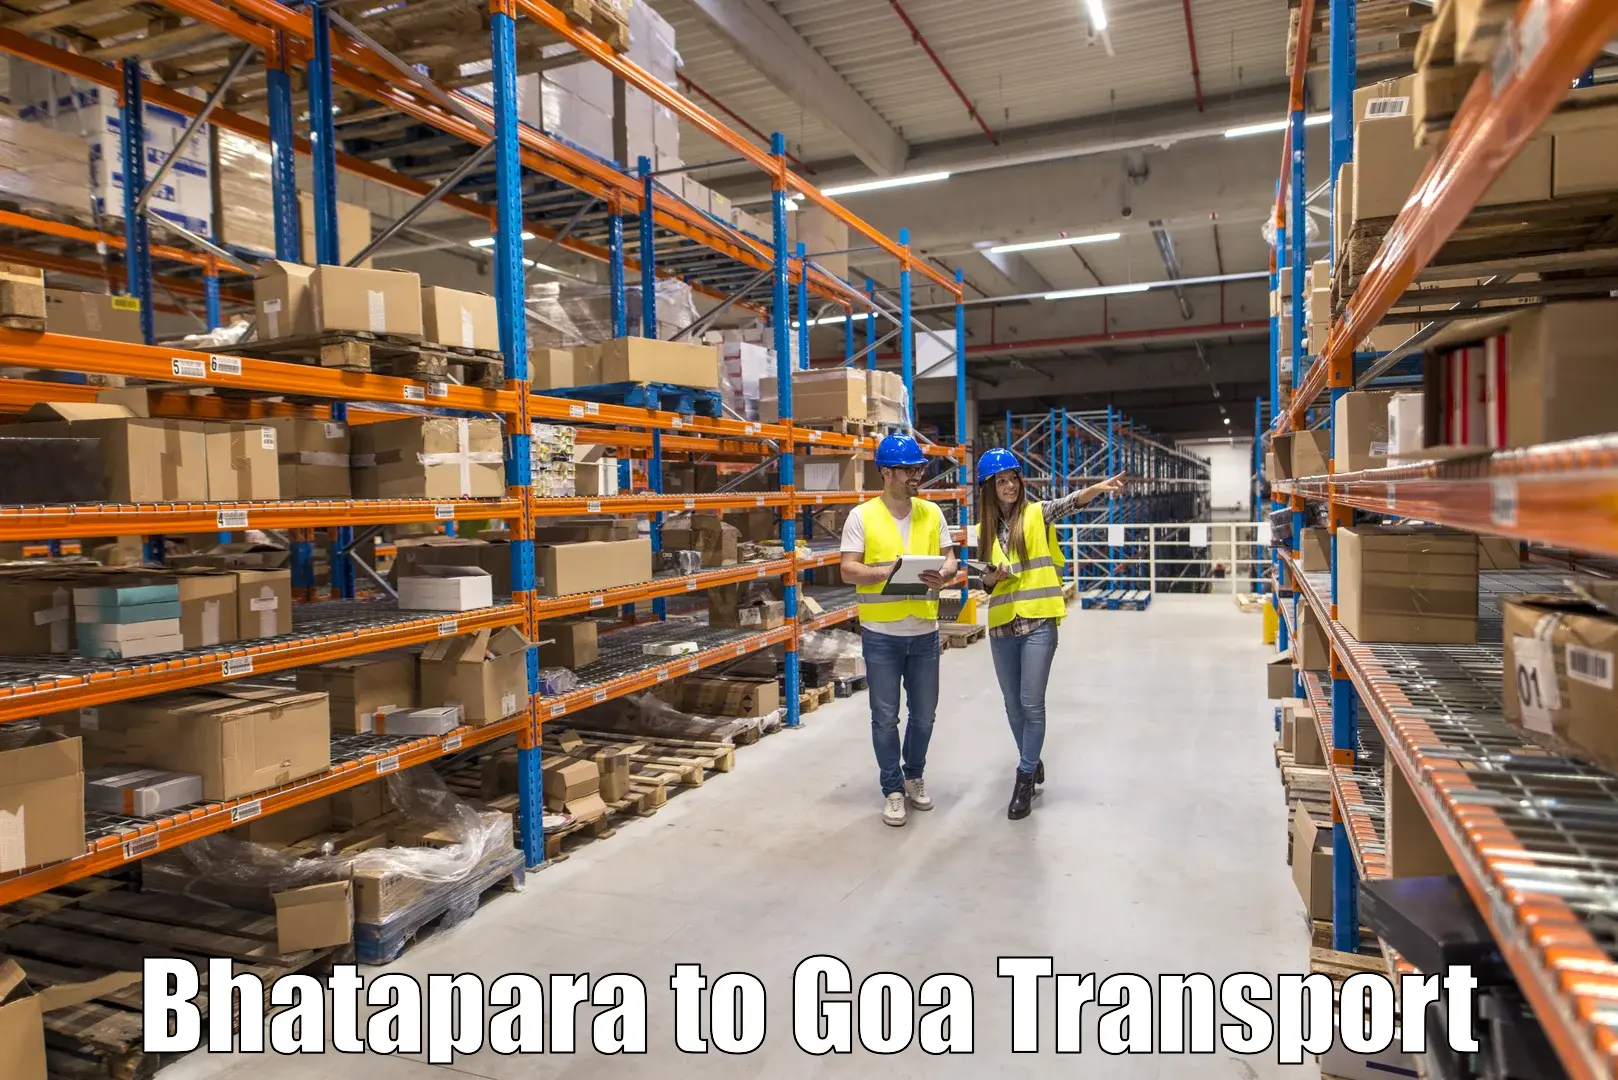 Daily transport service Bhatapara to Bardez